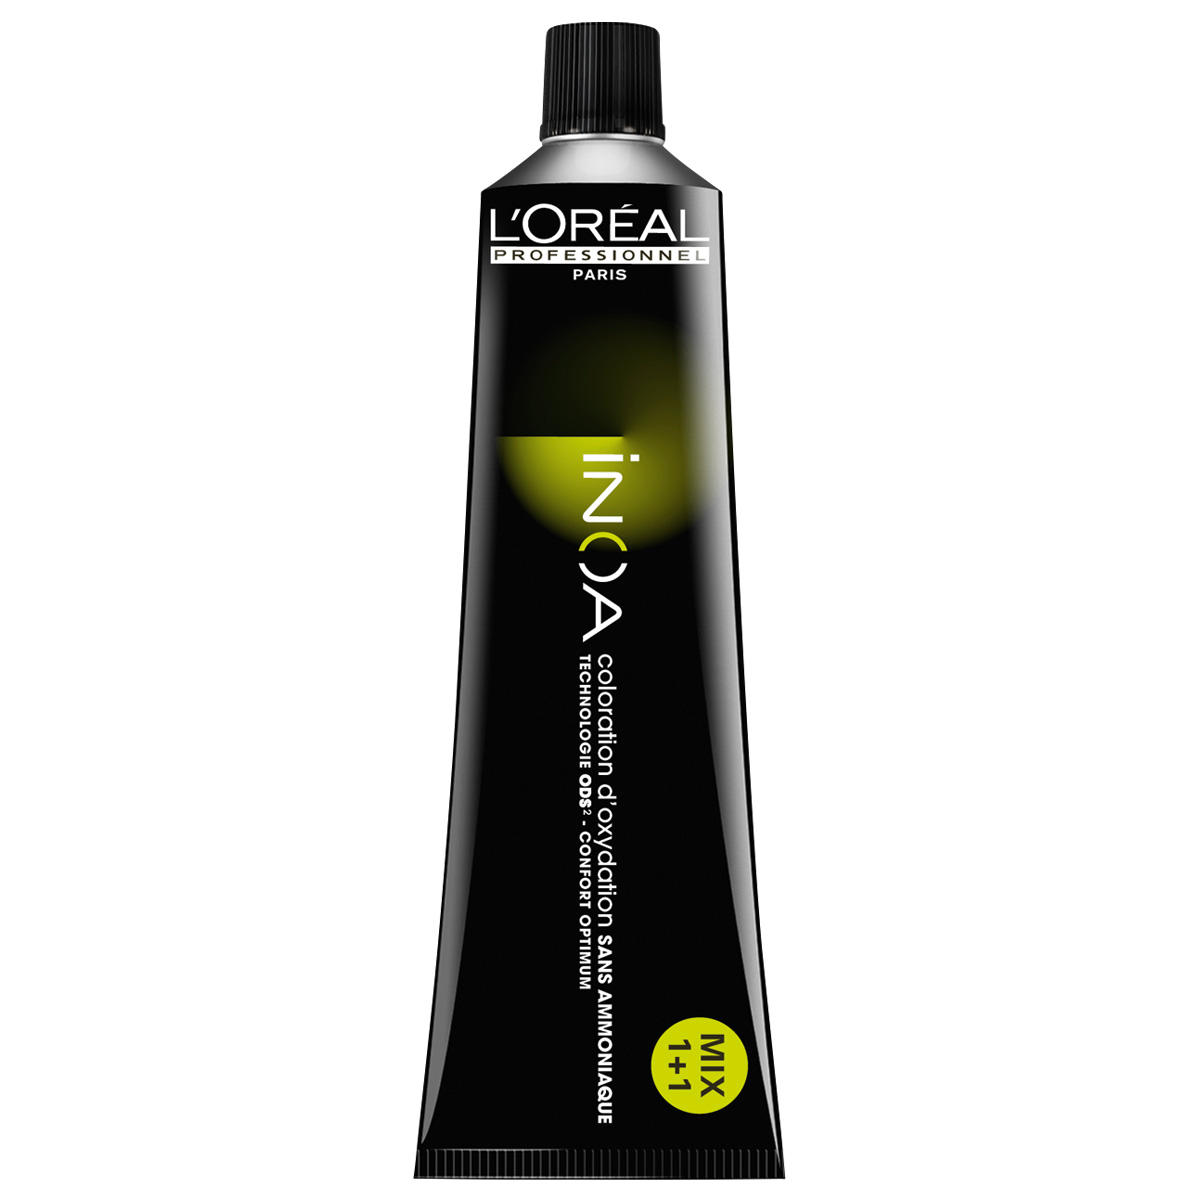 L'Oréal Professionnel Paris Coloration 6.32 Irisé rubio oscuro, tubo 60 ml